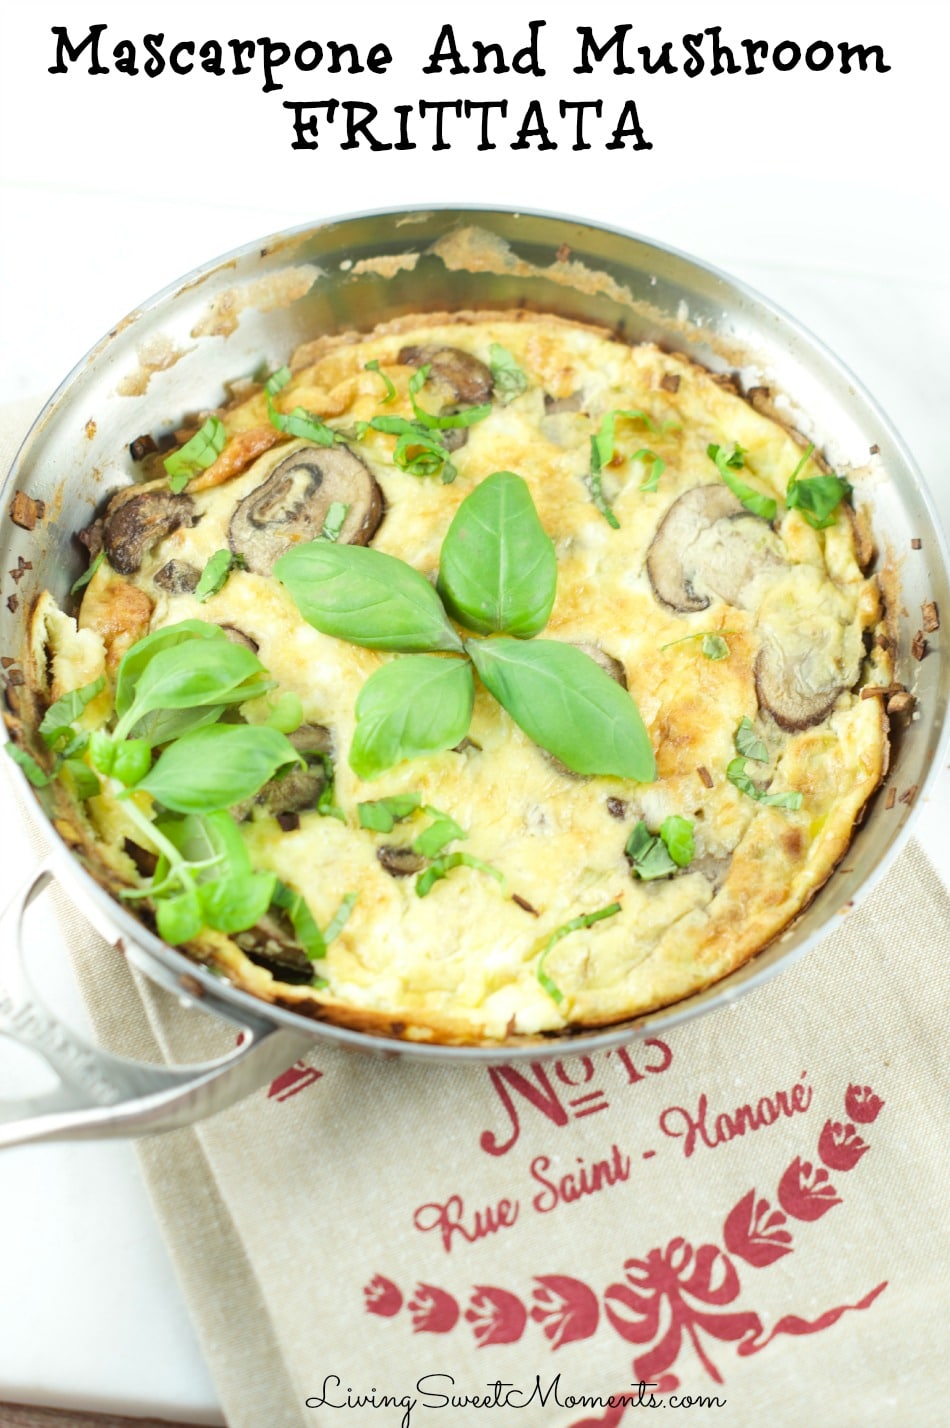 mascarpone-and-mushroom-frittata-recipe-cover